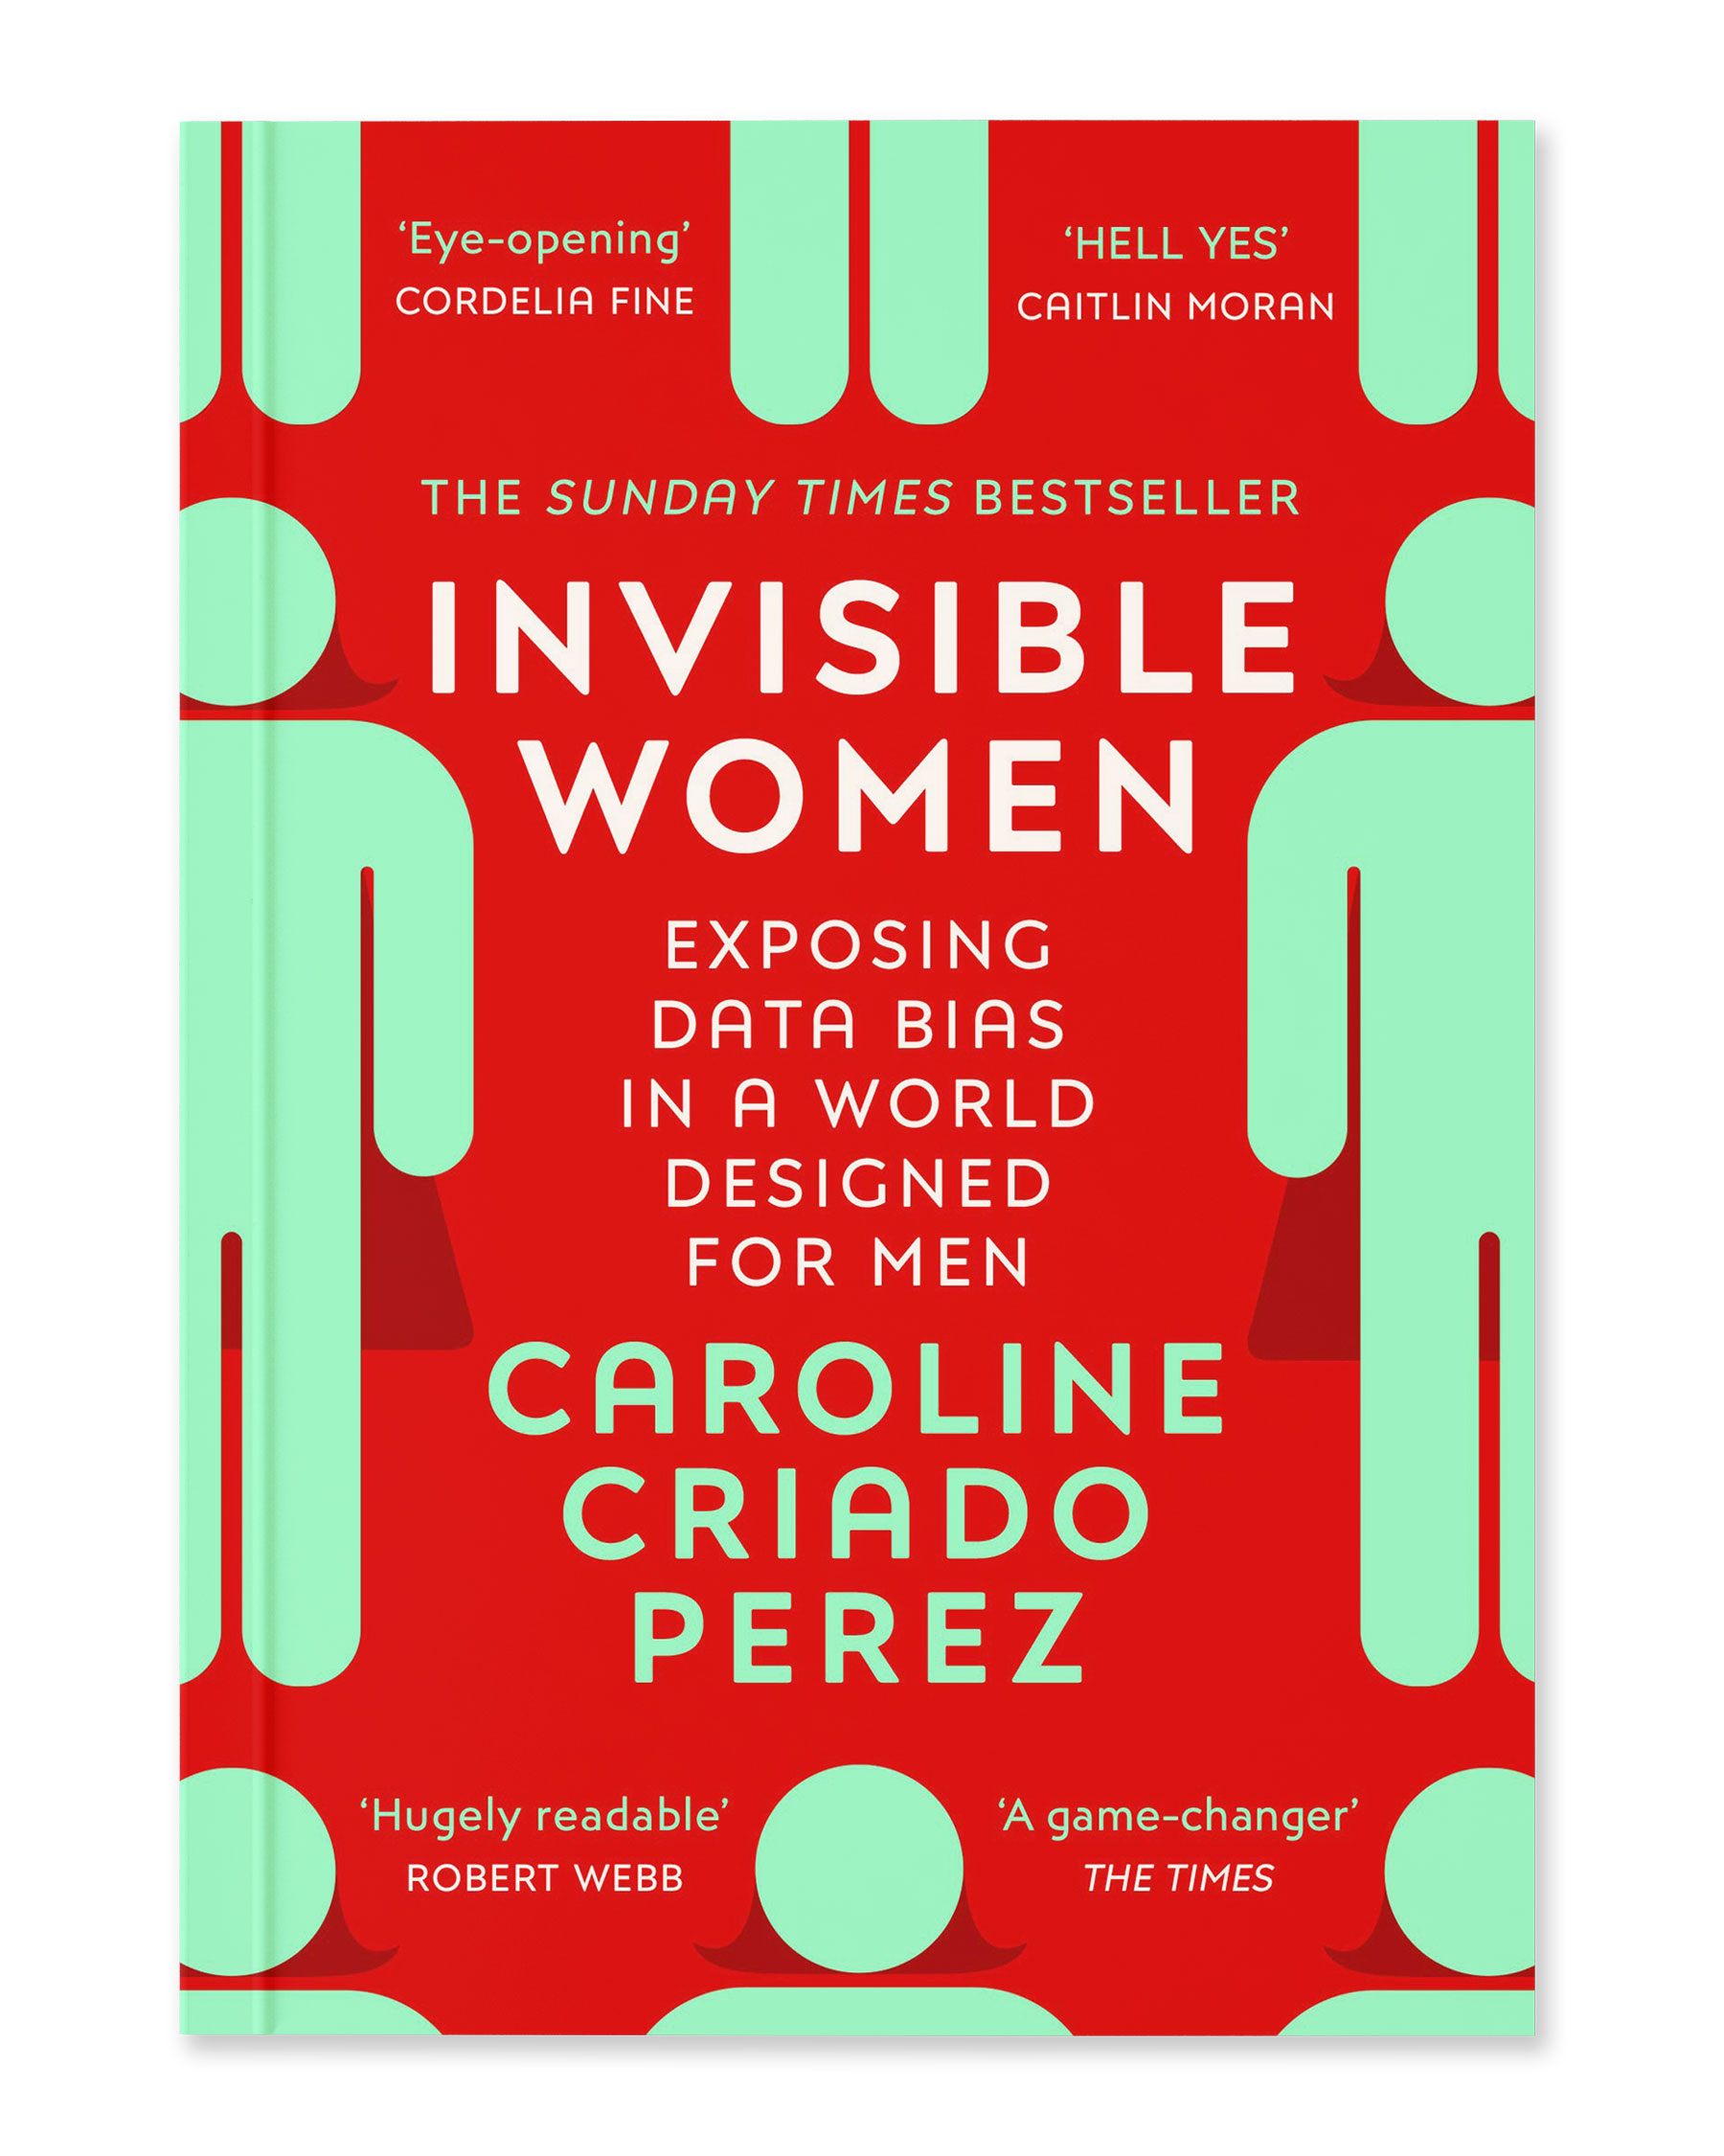 Buchvorschau von Invisible Women